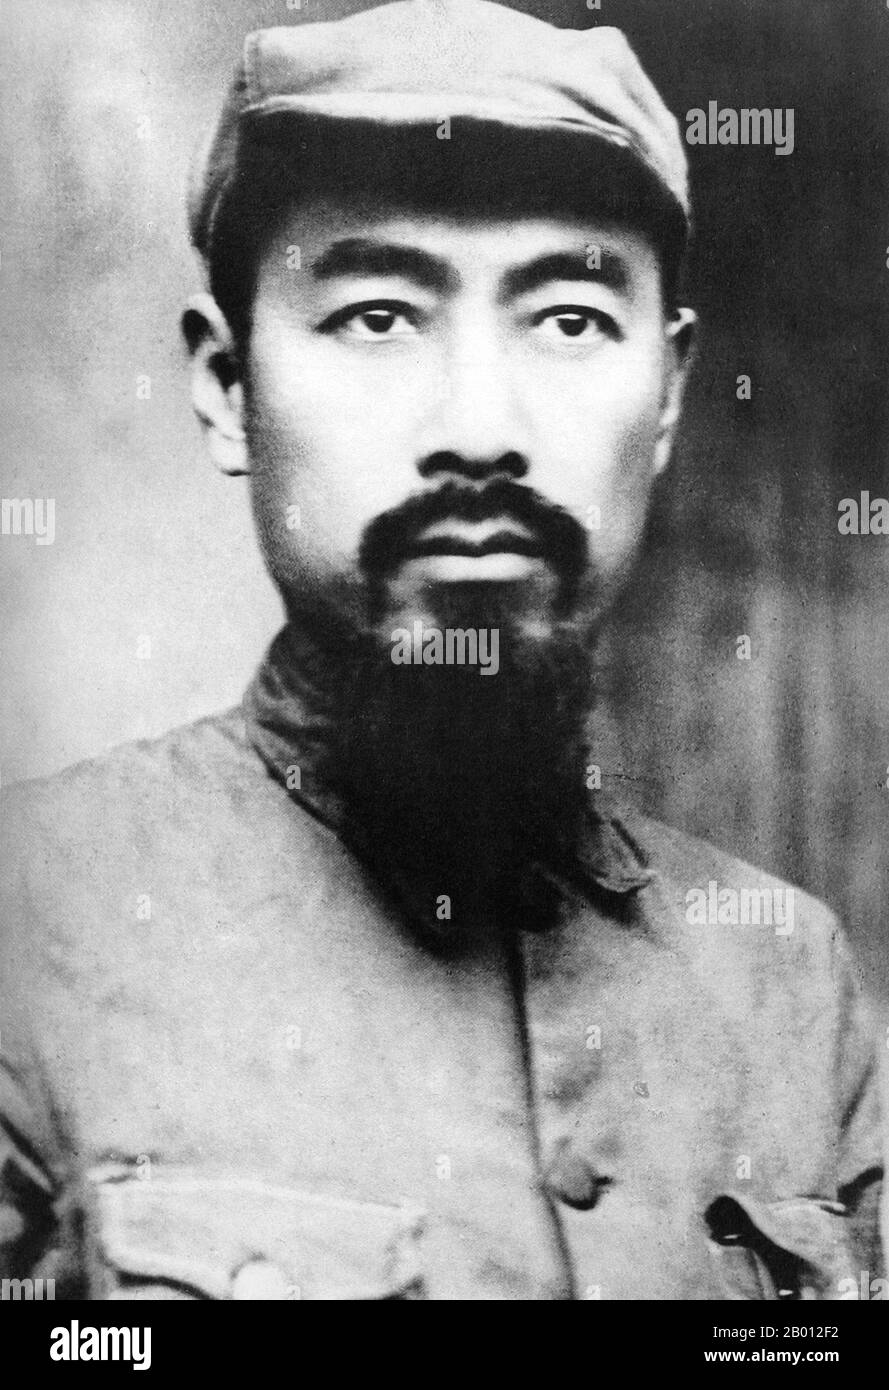 Cina: Zhou Enlai (Chou en-lai, 5 marzo 1898 – 8 gennaio 1976) con barba, Jiangxi sovietico, c.. 1933. Zhou Enlai è stato il primo Premier della Repubblica popolare Cinese, servendo dall'ottobre 1949 fino alla sua morte nel gennaio 1976. Zhou è stato determinante per l'ascesa al potere del Partito comunista, e successivamente per lo sviluppo dell'economia cinese e la ristrutturazione della società cinese. Foto Stock